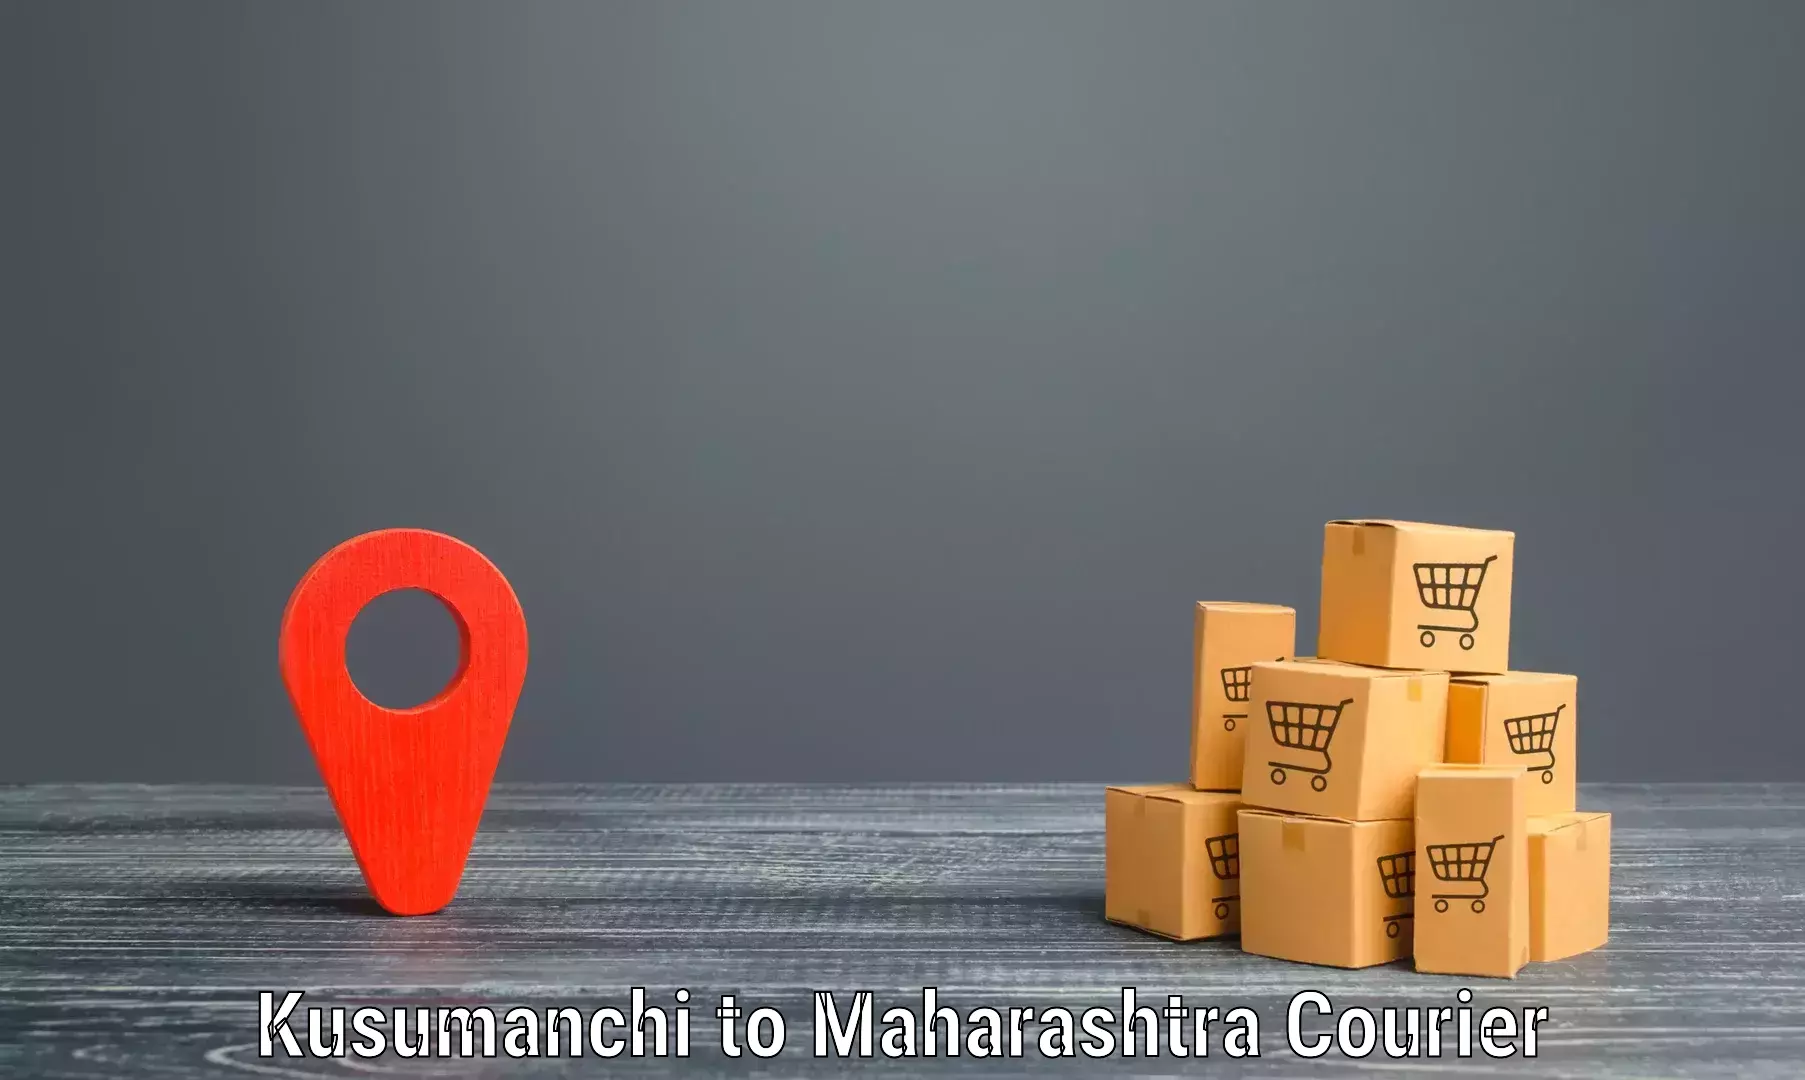 International parcel service Kusumanchi to Kandhar